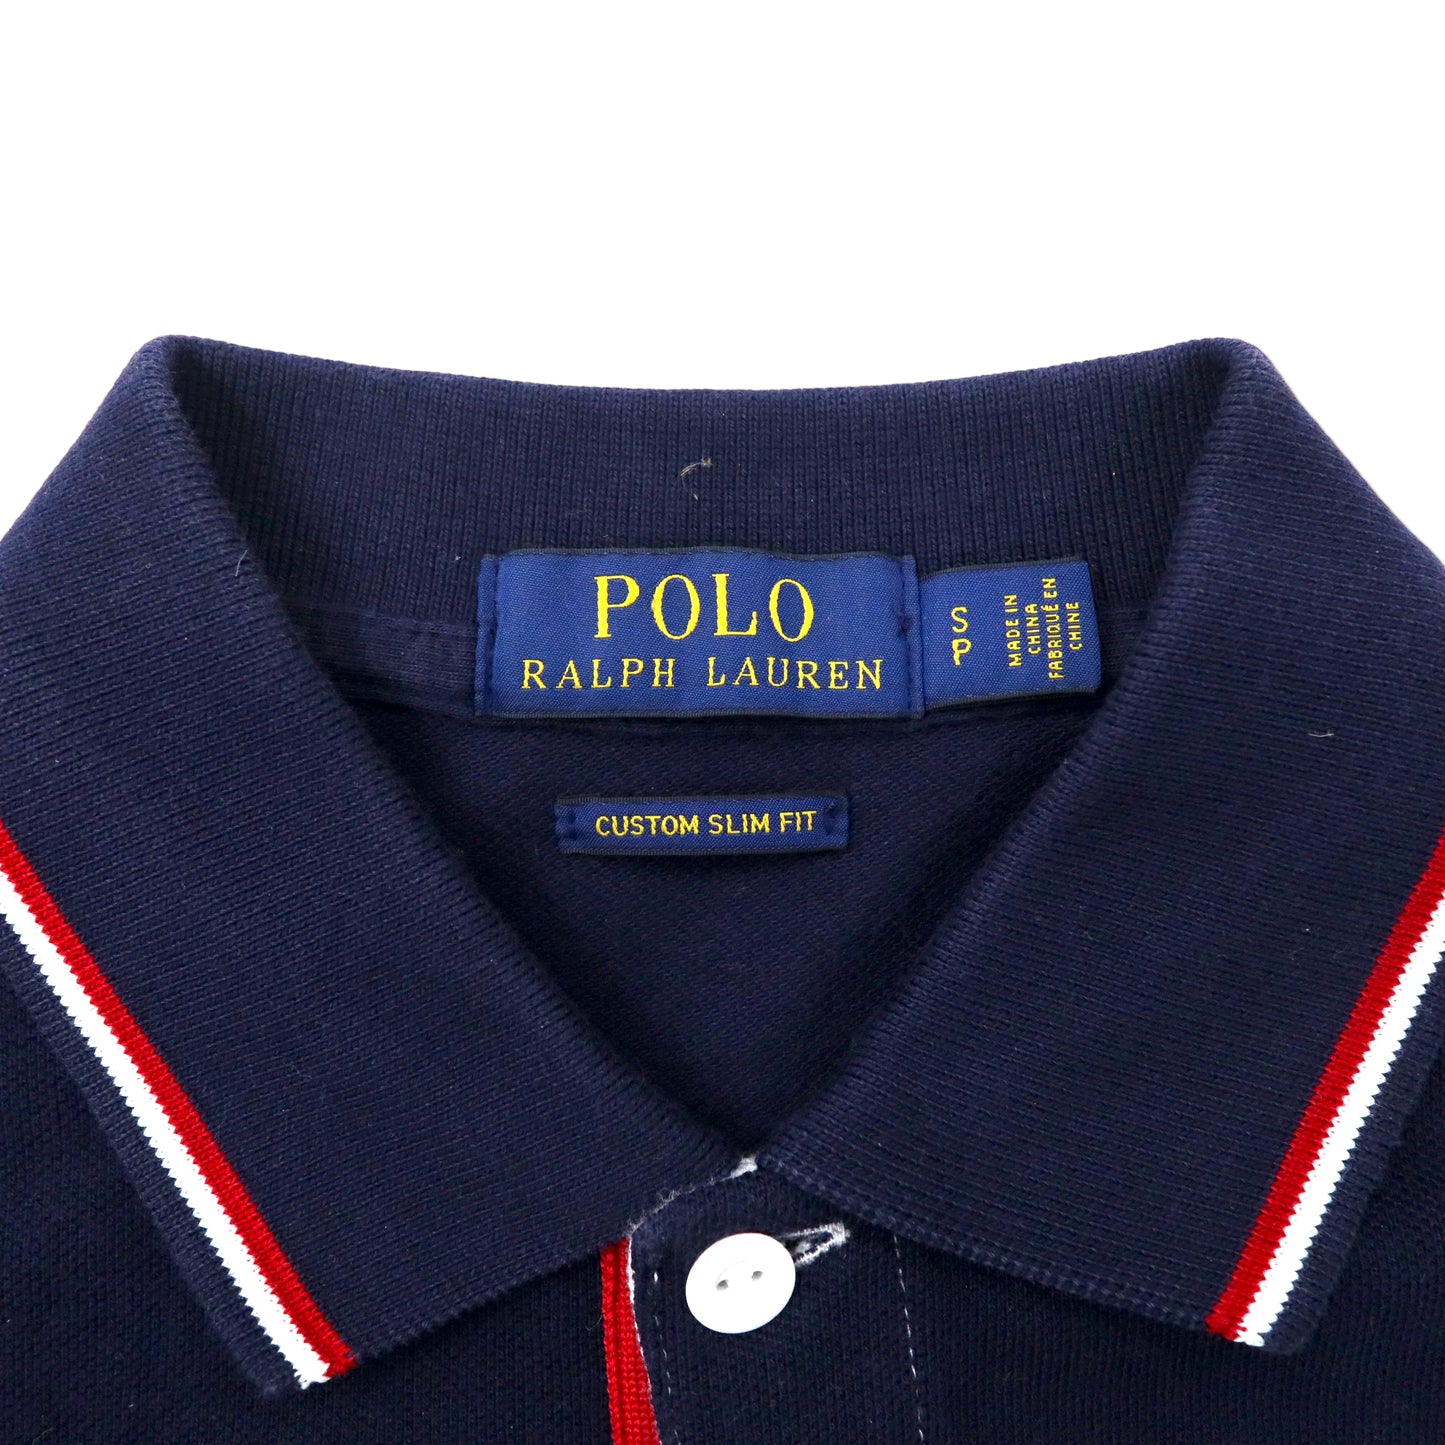 POLO RALPH LAUREN ポロシャツ S ネイビー ホワイト ボーダー USA ポニー刺繍 ナンバリング CUSTOM SLIM FIT